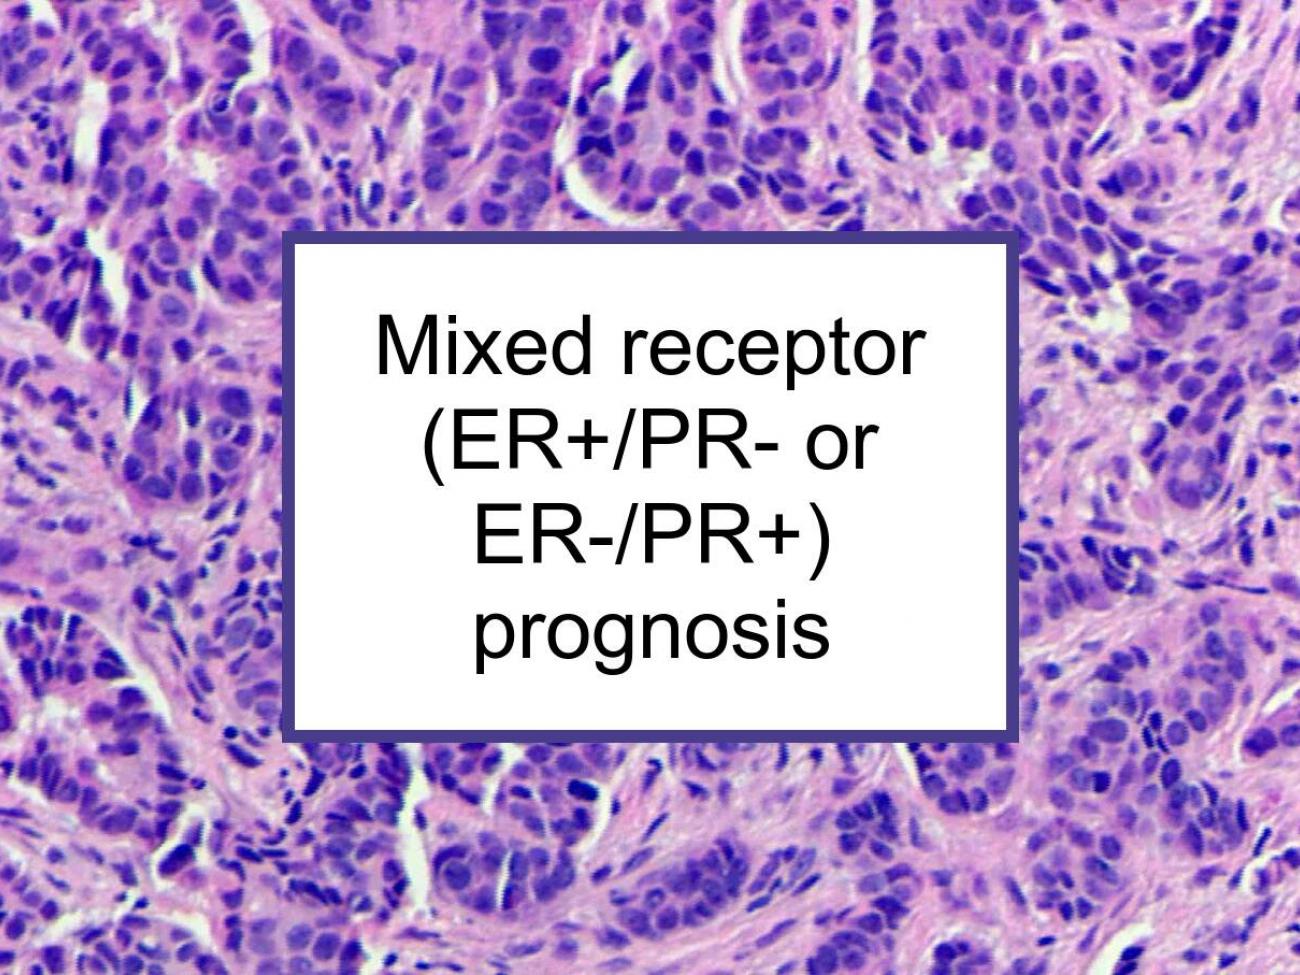 Mixed Hormone Receptor (ER+/PR- Or ER-/PR+) Breast Cancer Prognosis